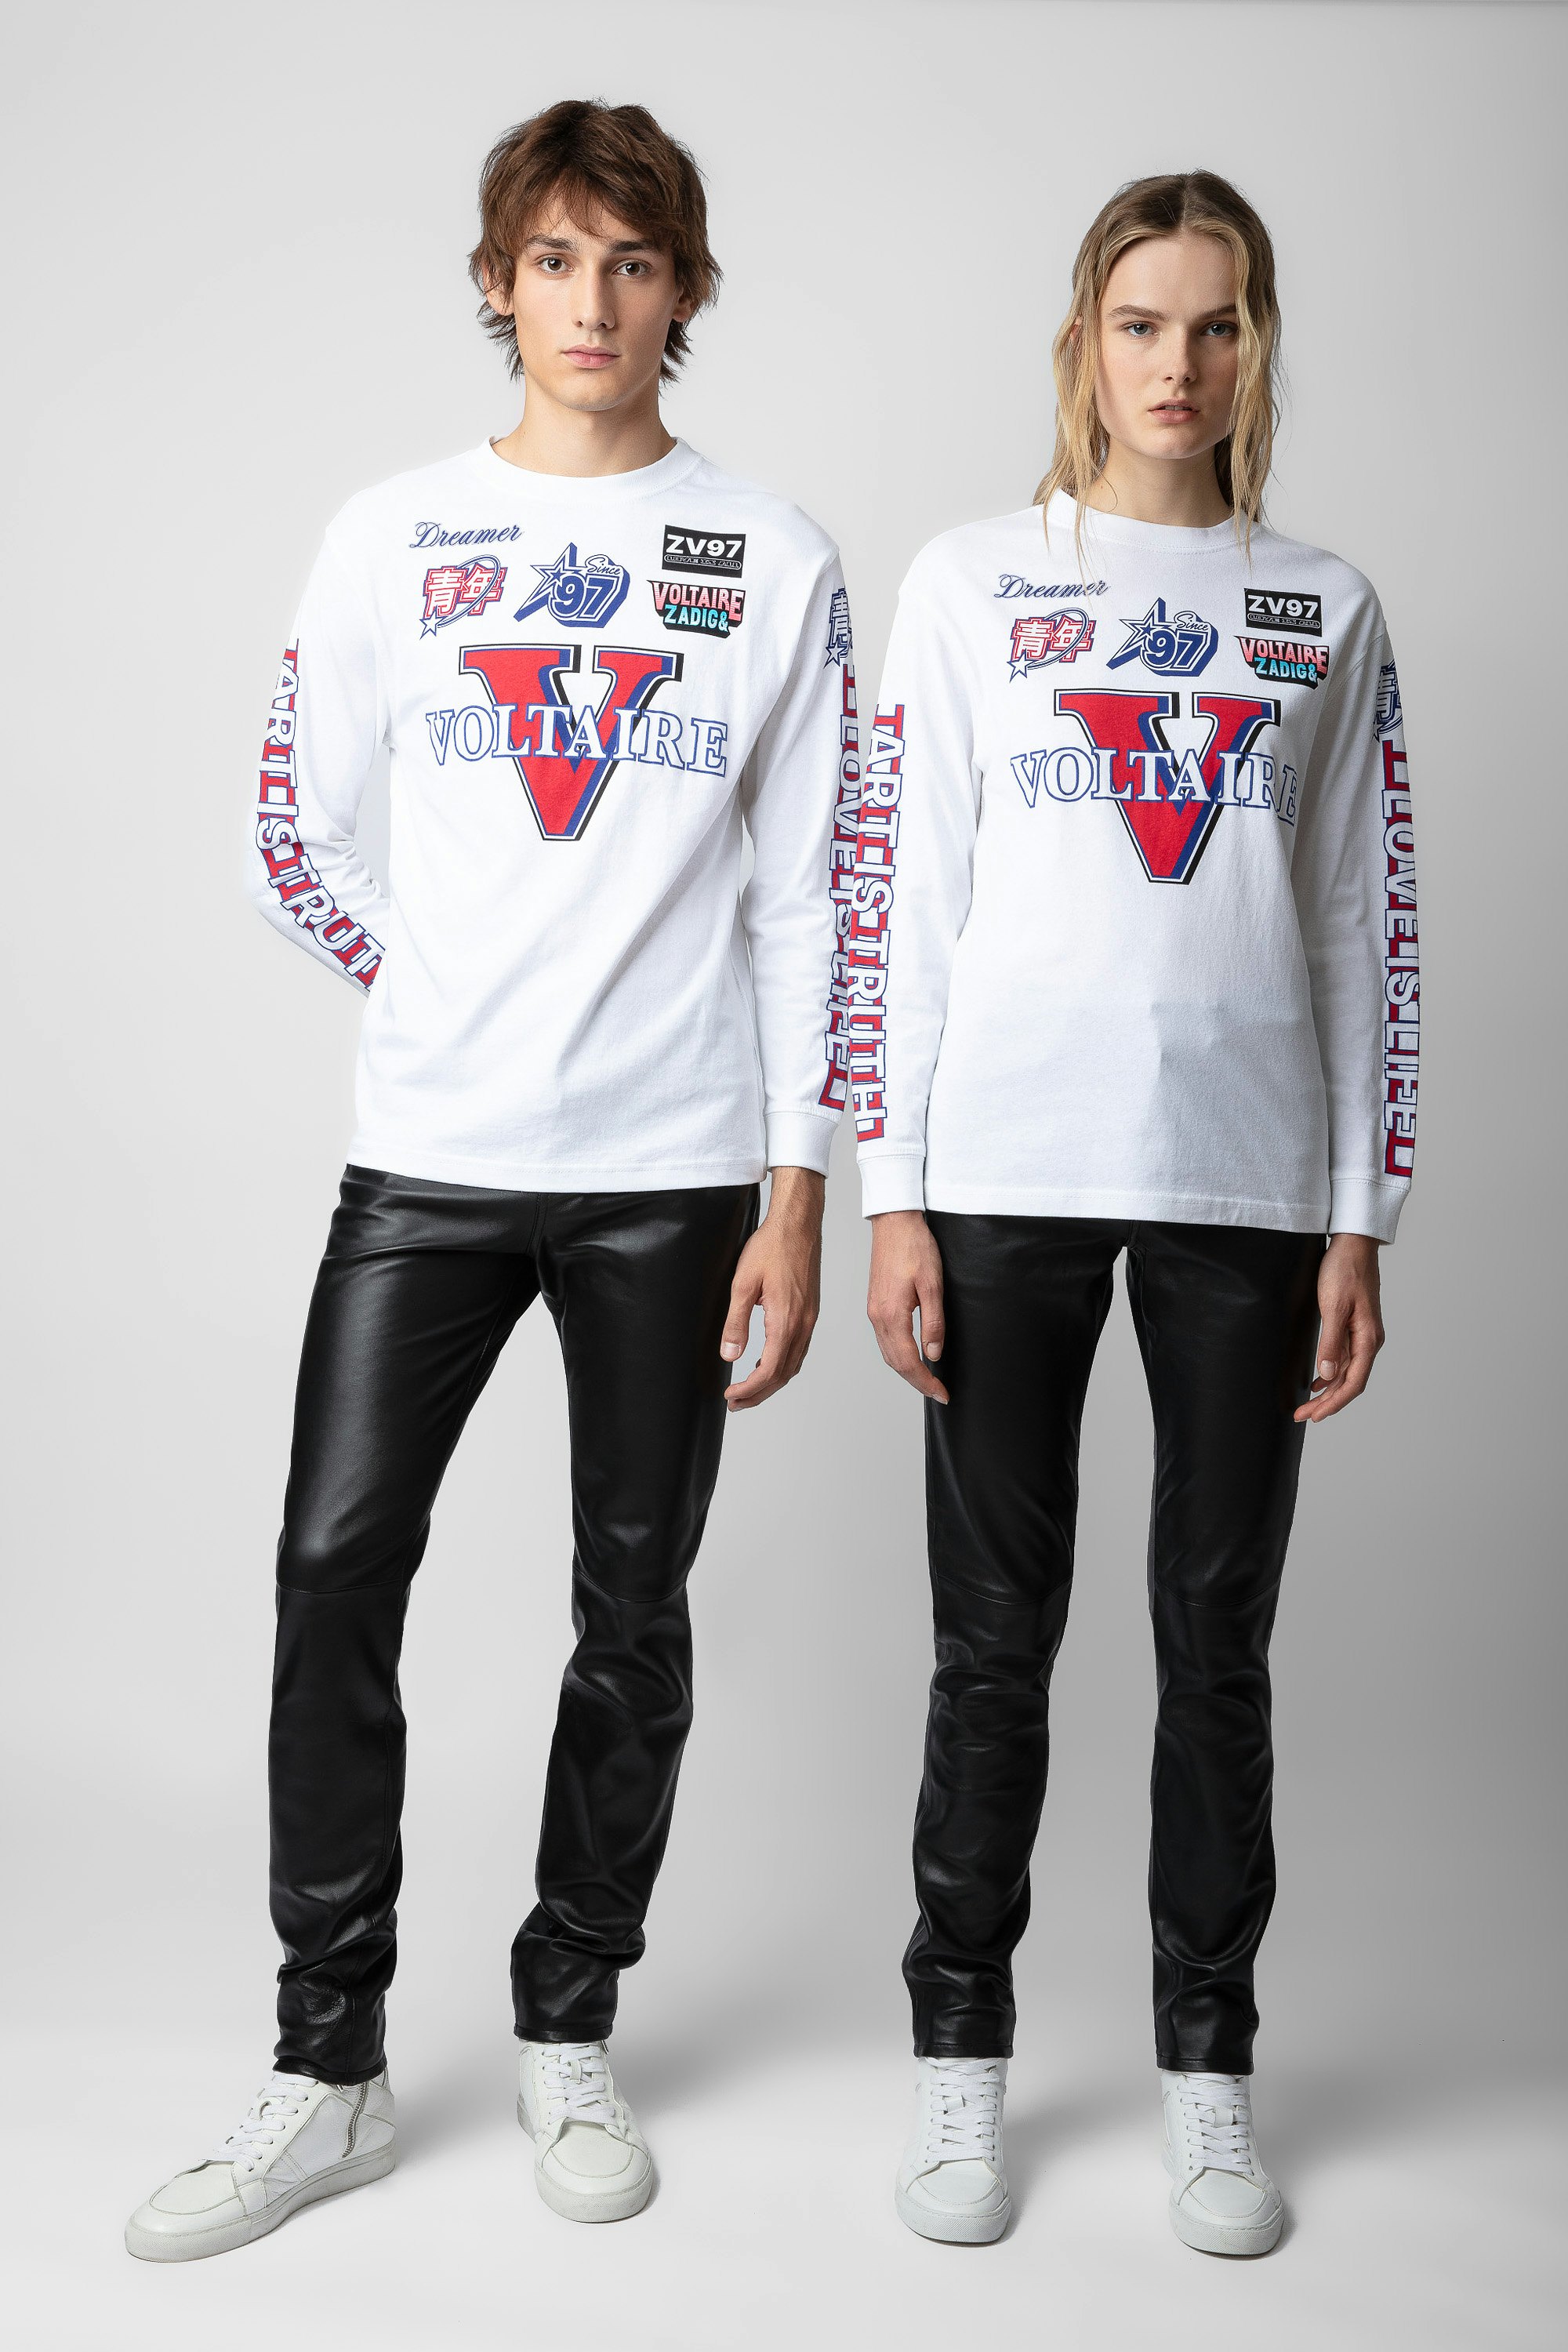 T-Shirt Noane Voltaire - Weißes unisex-Shirt im Biker-Stil aus Baumwolle mit langen Ärmeln, Voltaire-Badgemotiven und verstärkten Ellenbogen.